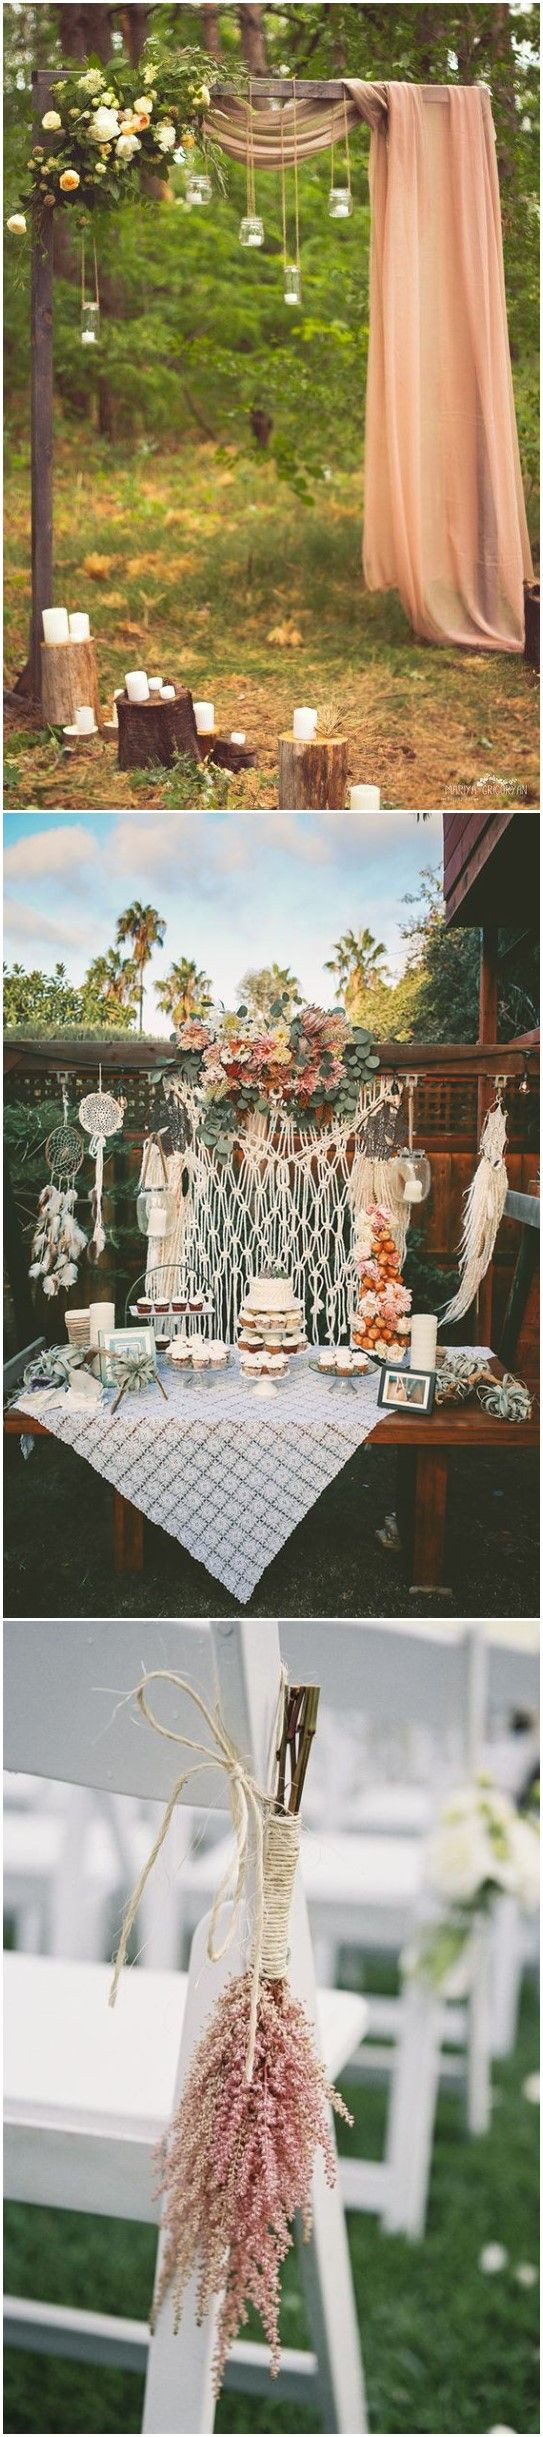 DIY Wedding Ideas Pinterest
 20 Gorgeous Boho Wedding Décor Ideas on Pinterest